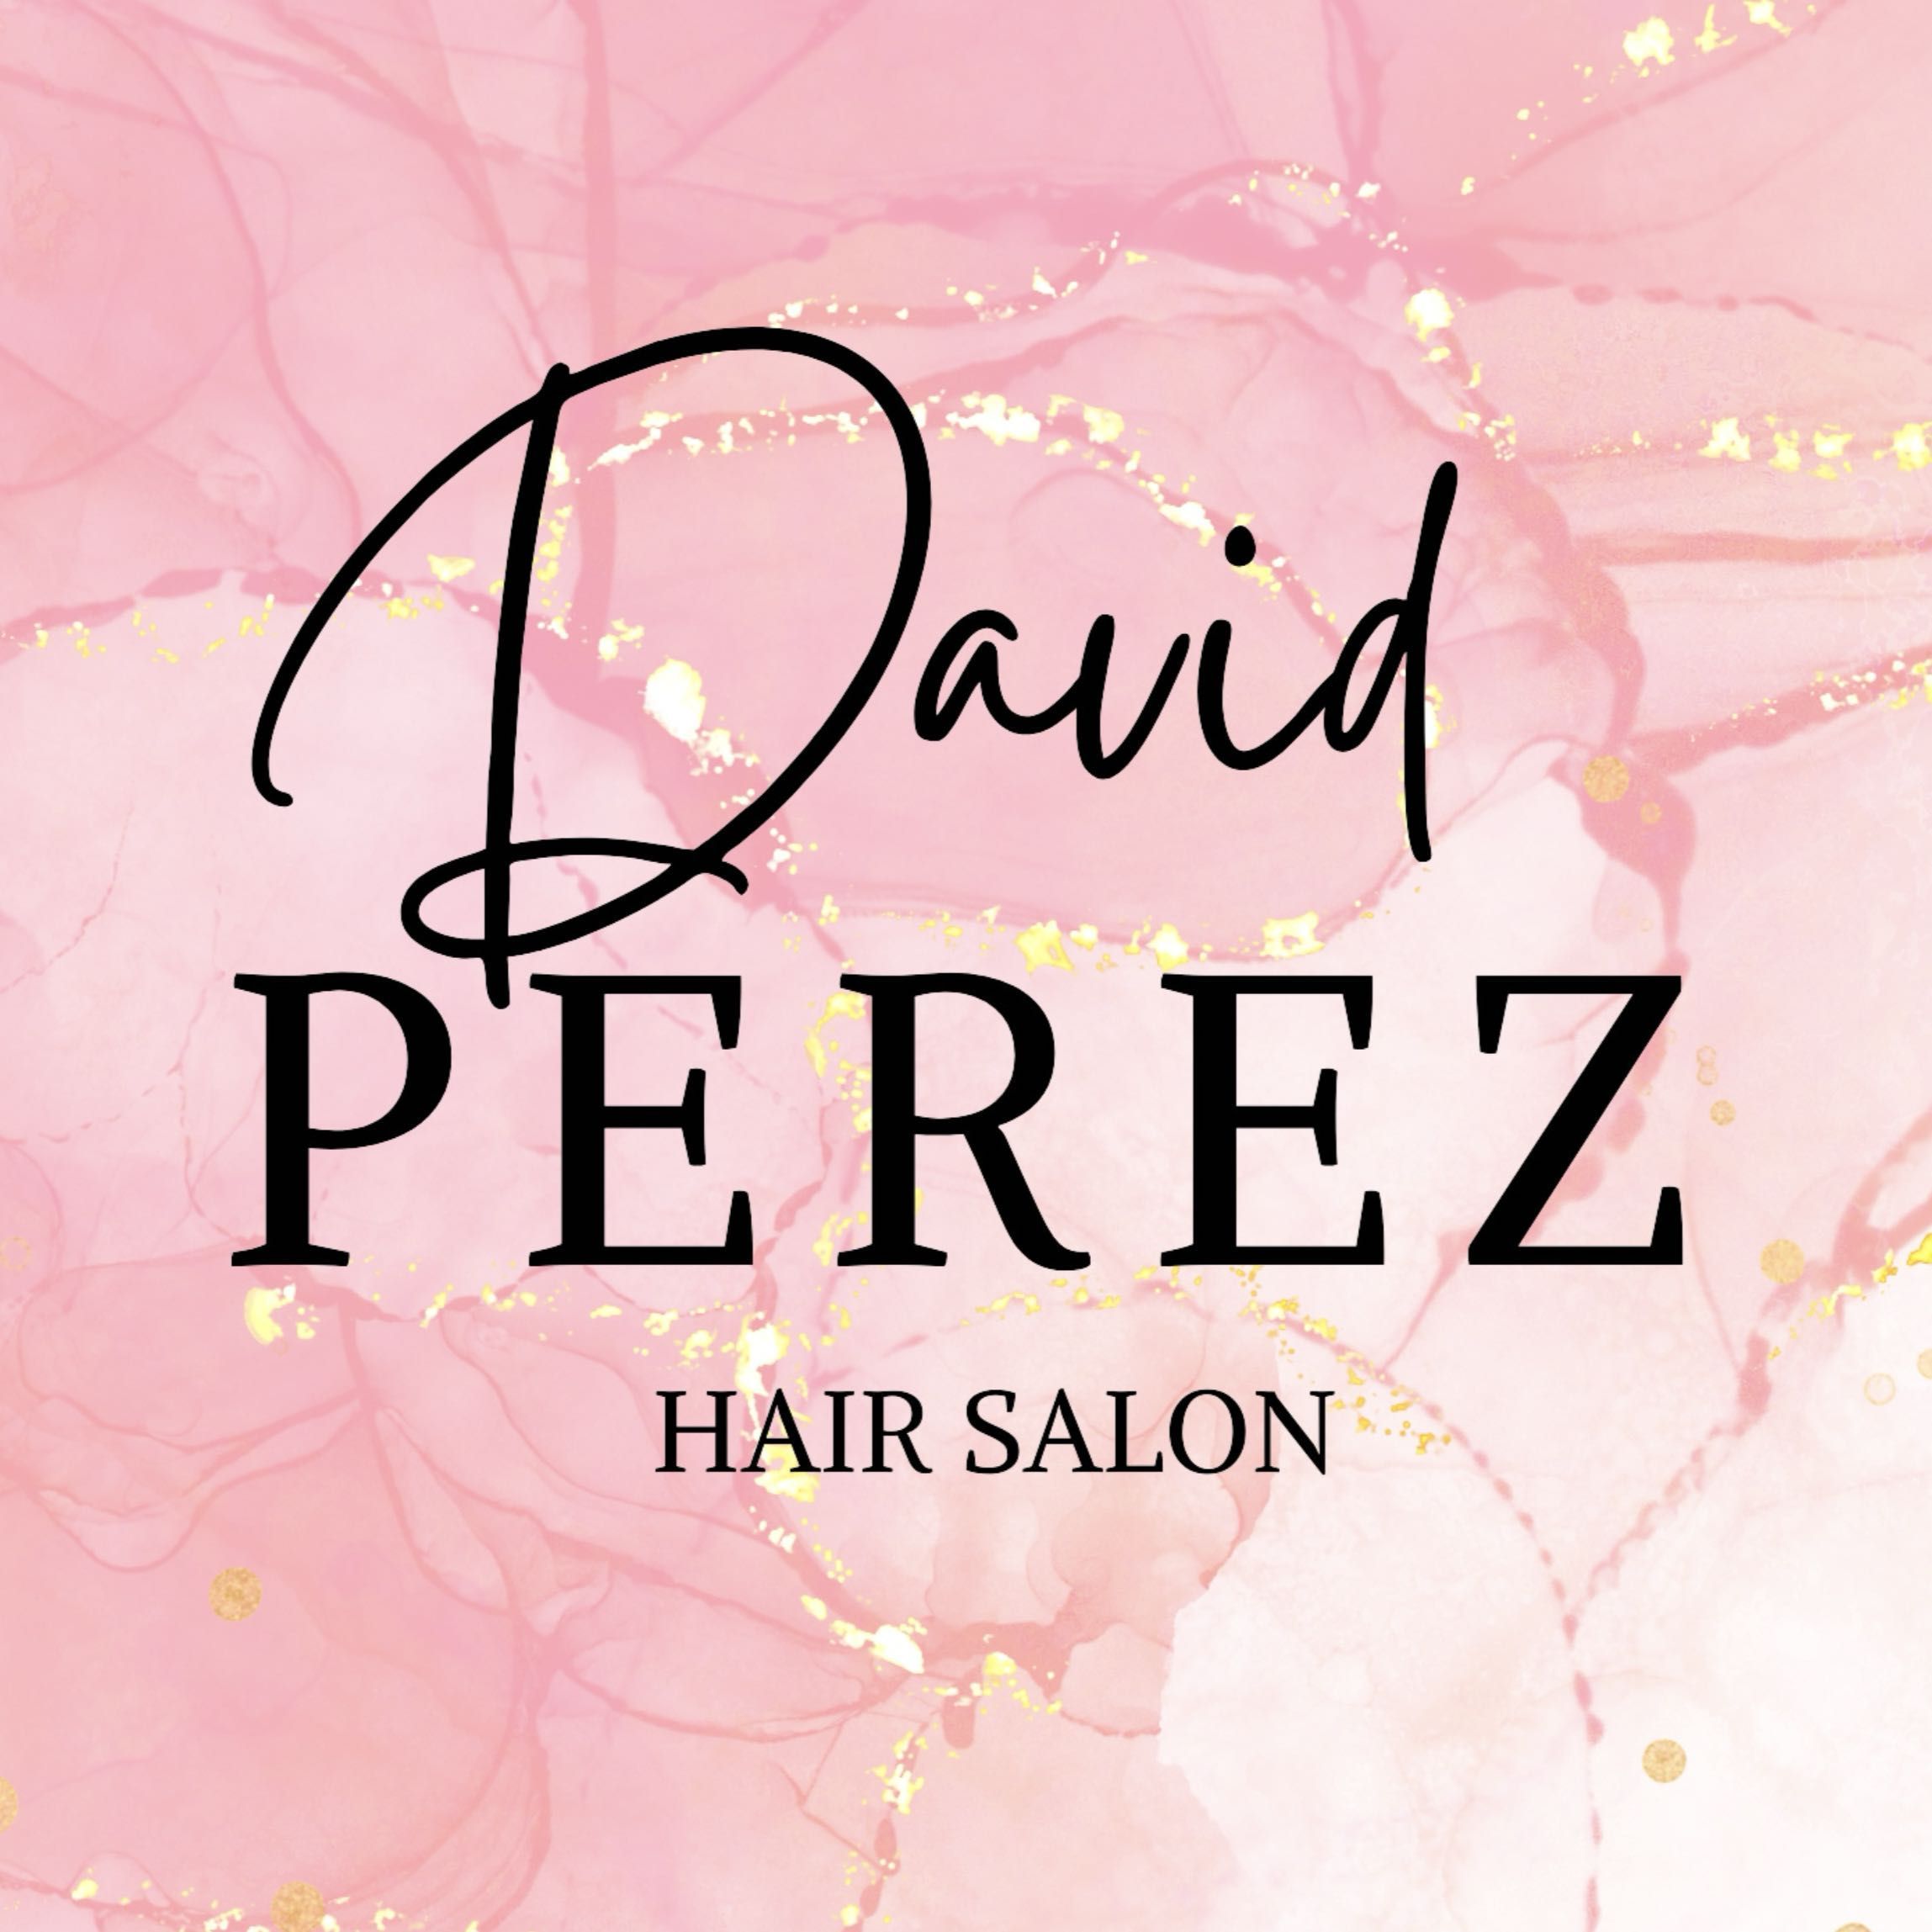 David Perez Hair Salon, Calle de Dénia, 76 bajo, 46006, Valencia